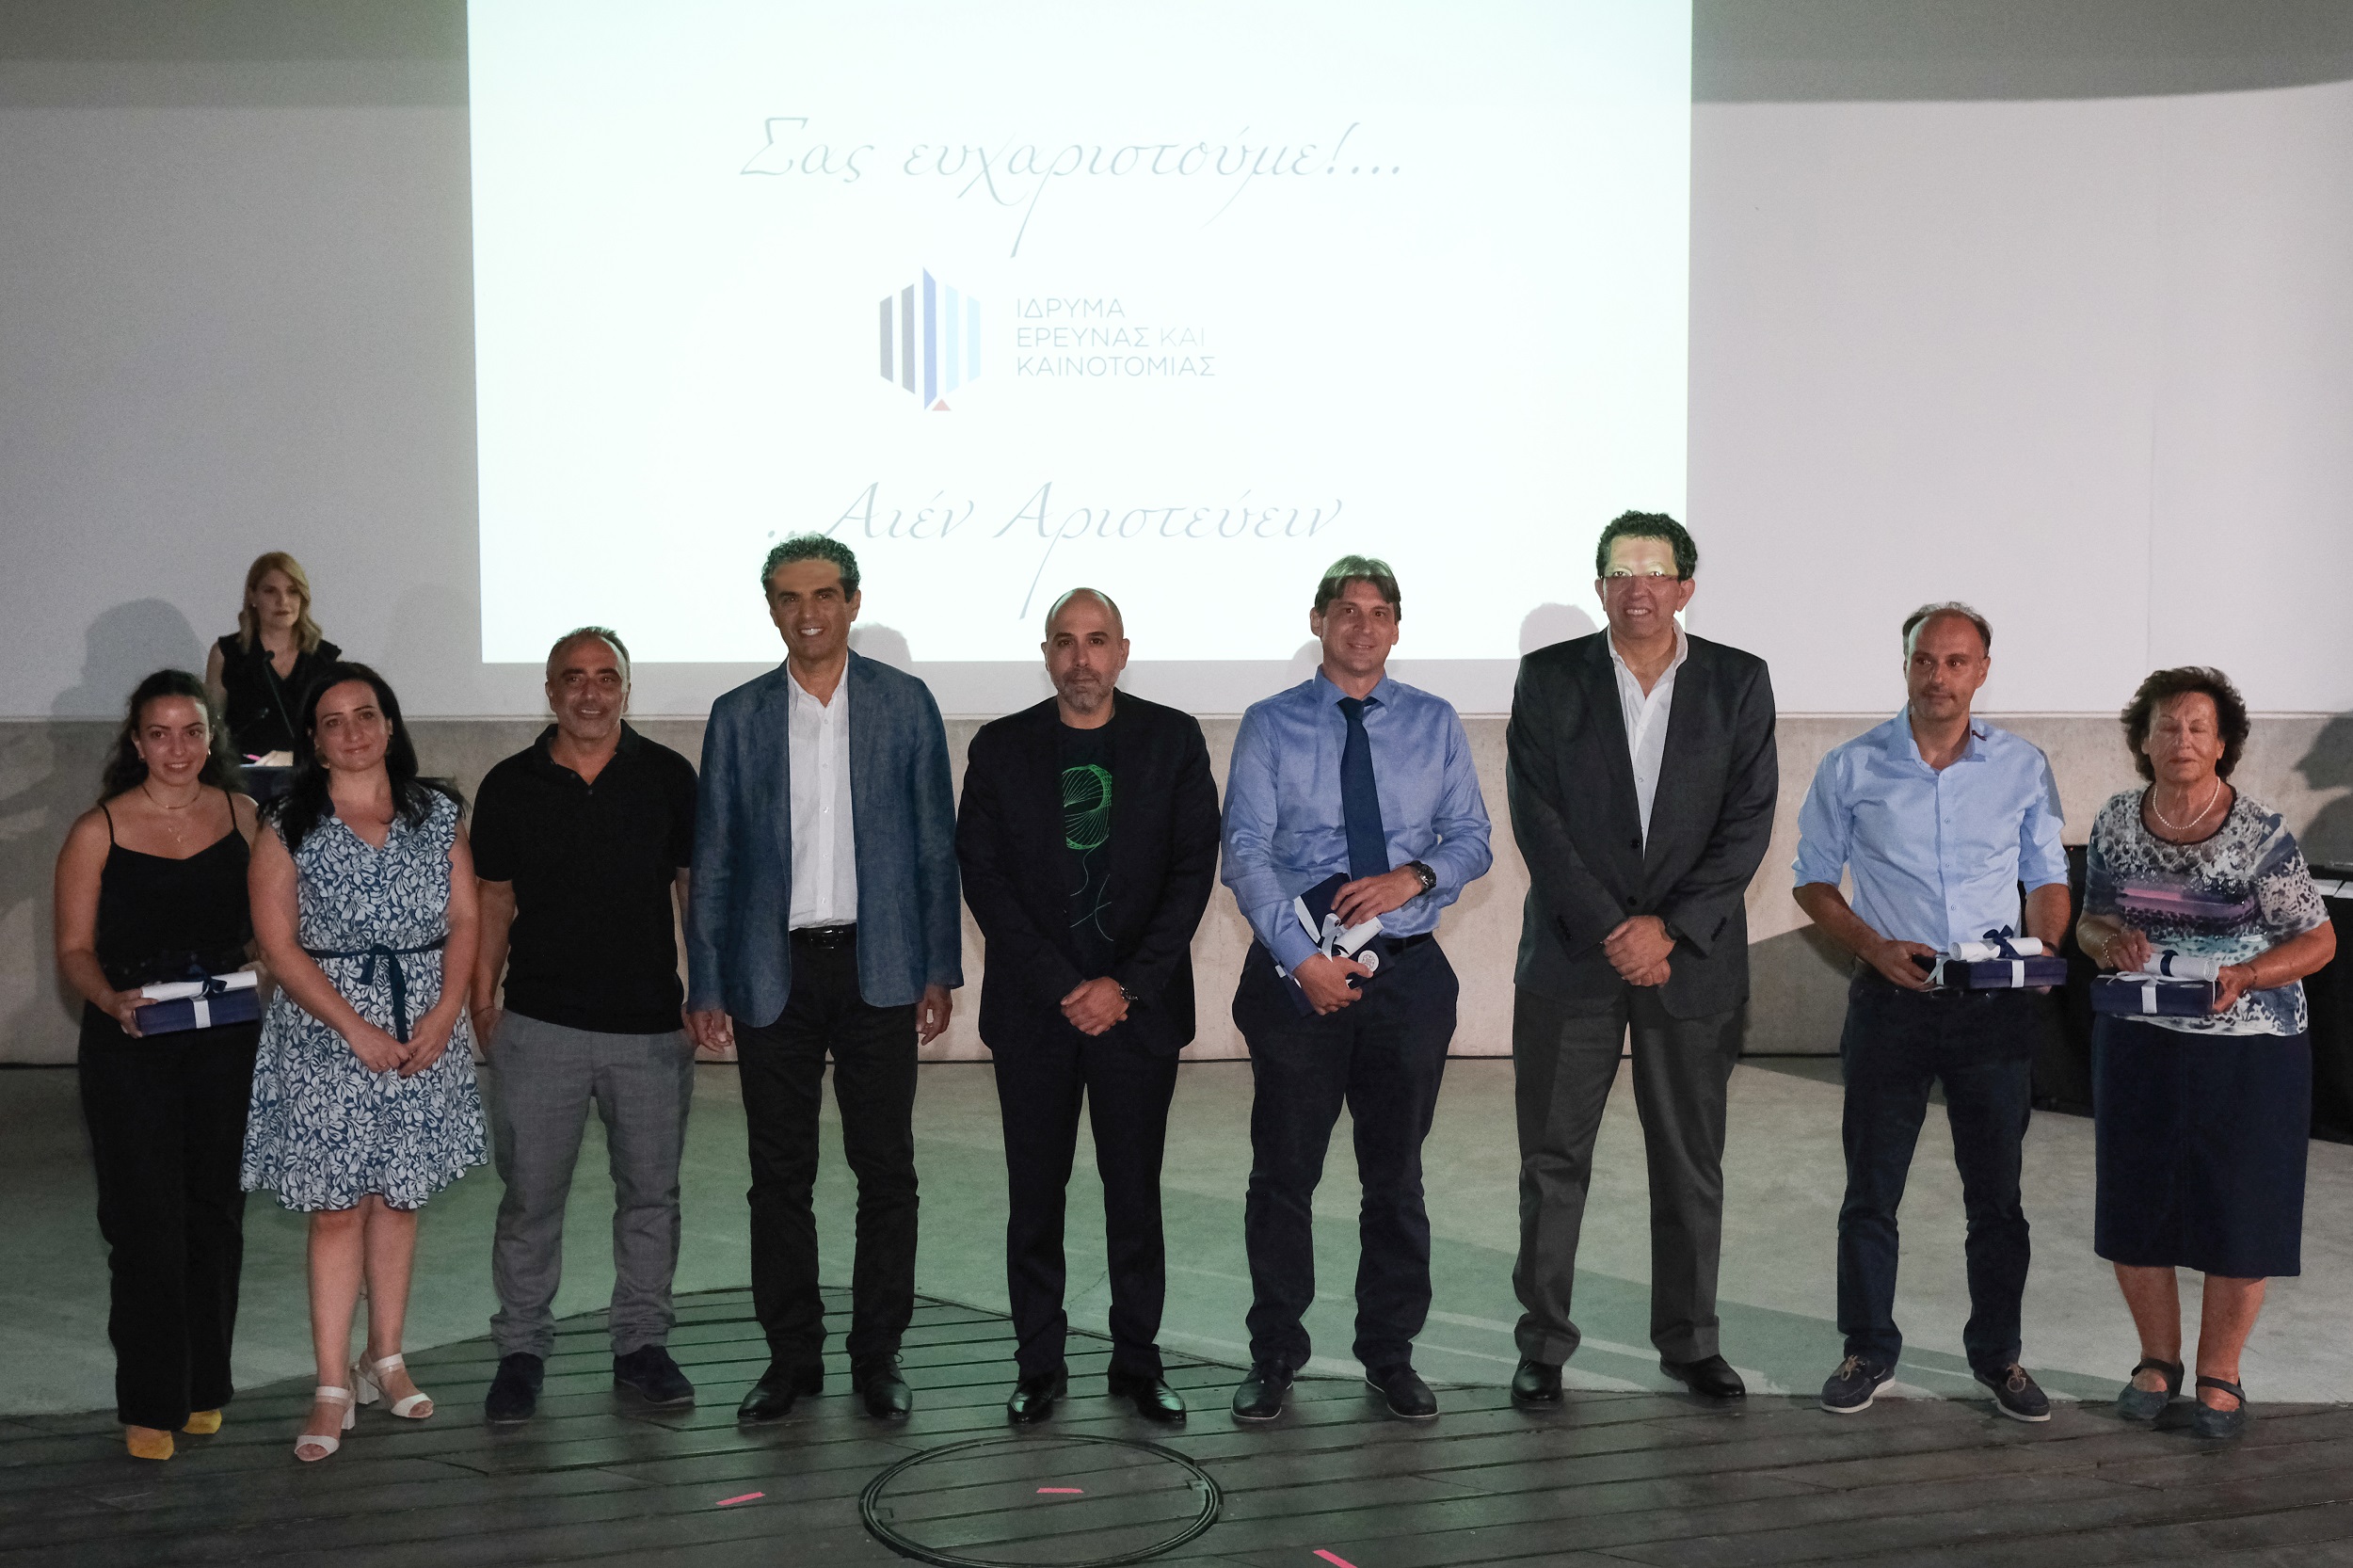 Το ΙδΕΚ βράβευσε ερευνητές της Κύπρου που χρηματοδοτήθηκαν από το Ευρωπαϊκό Συμβούλιο Έρευνας